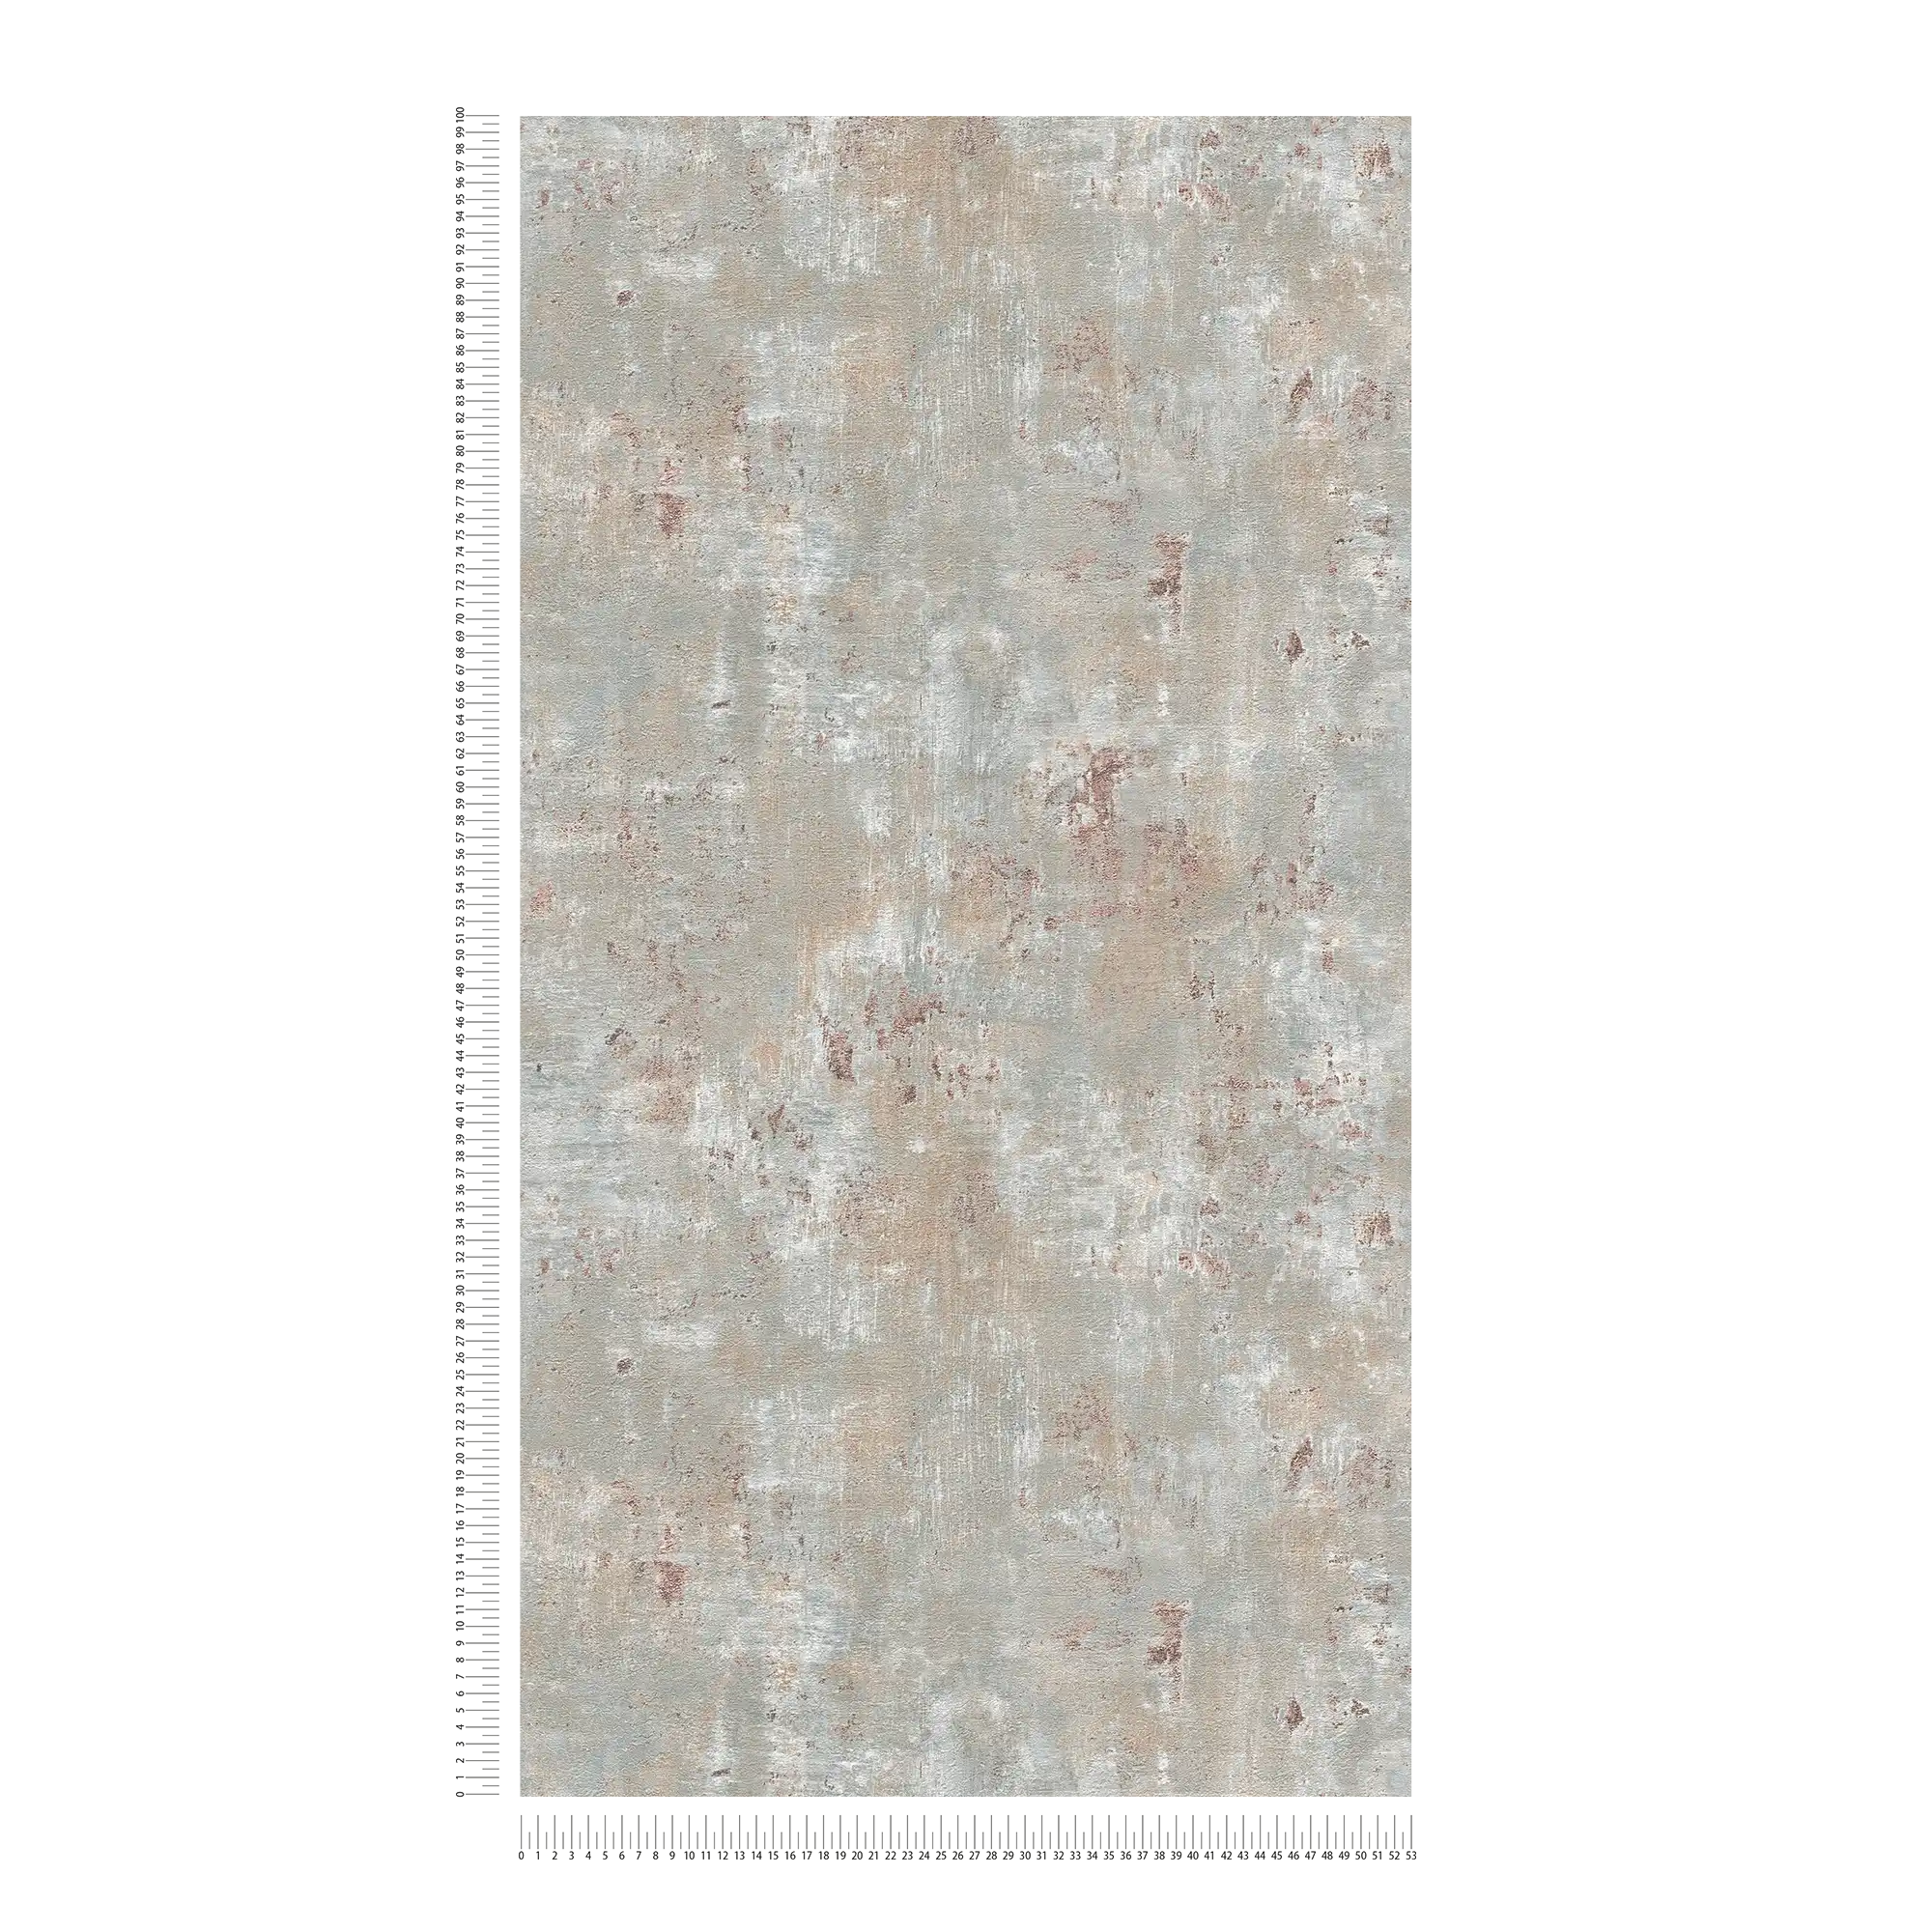             Carta da parati non tessuta in look used con accenti metallici - grigio, blu, bronzo
        